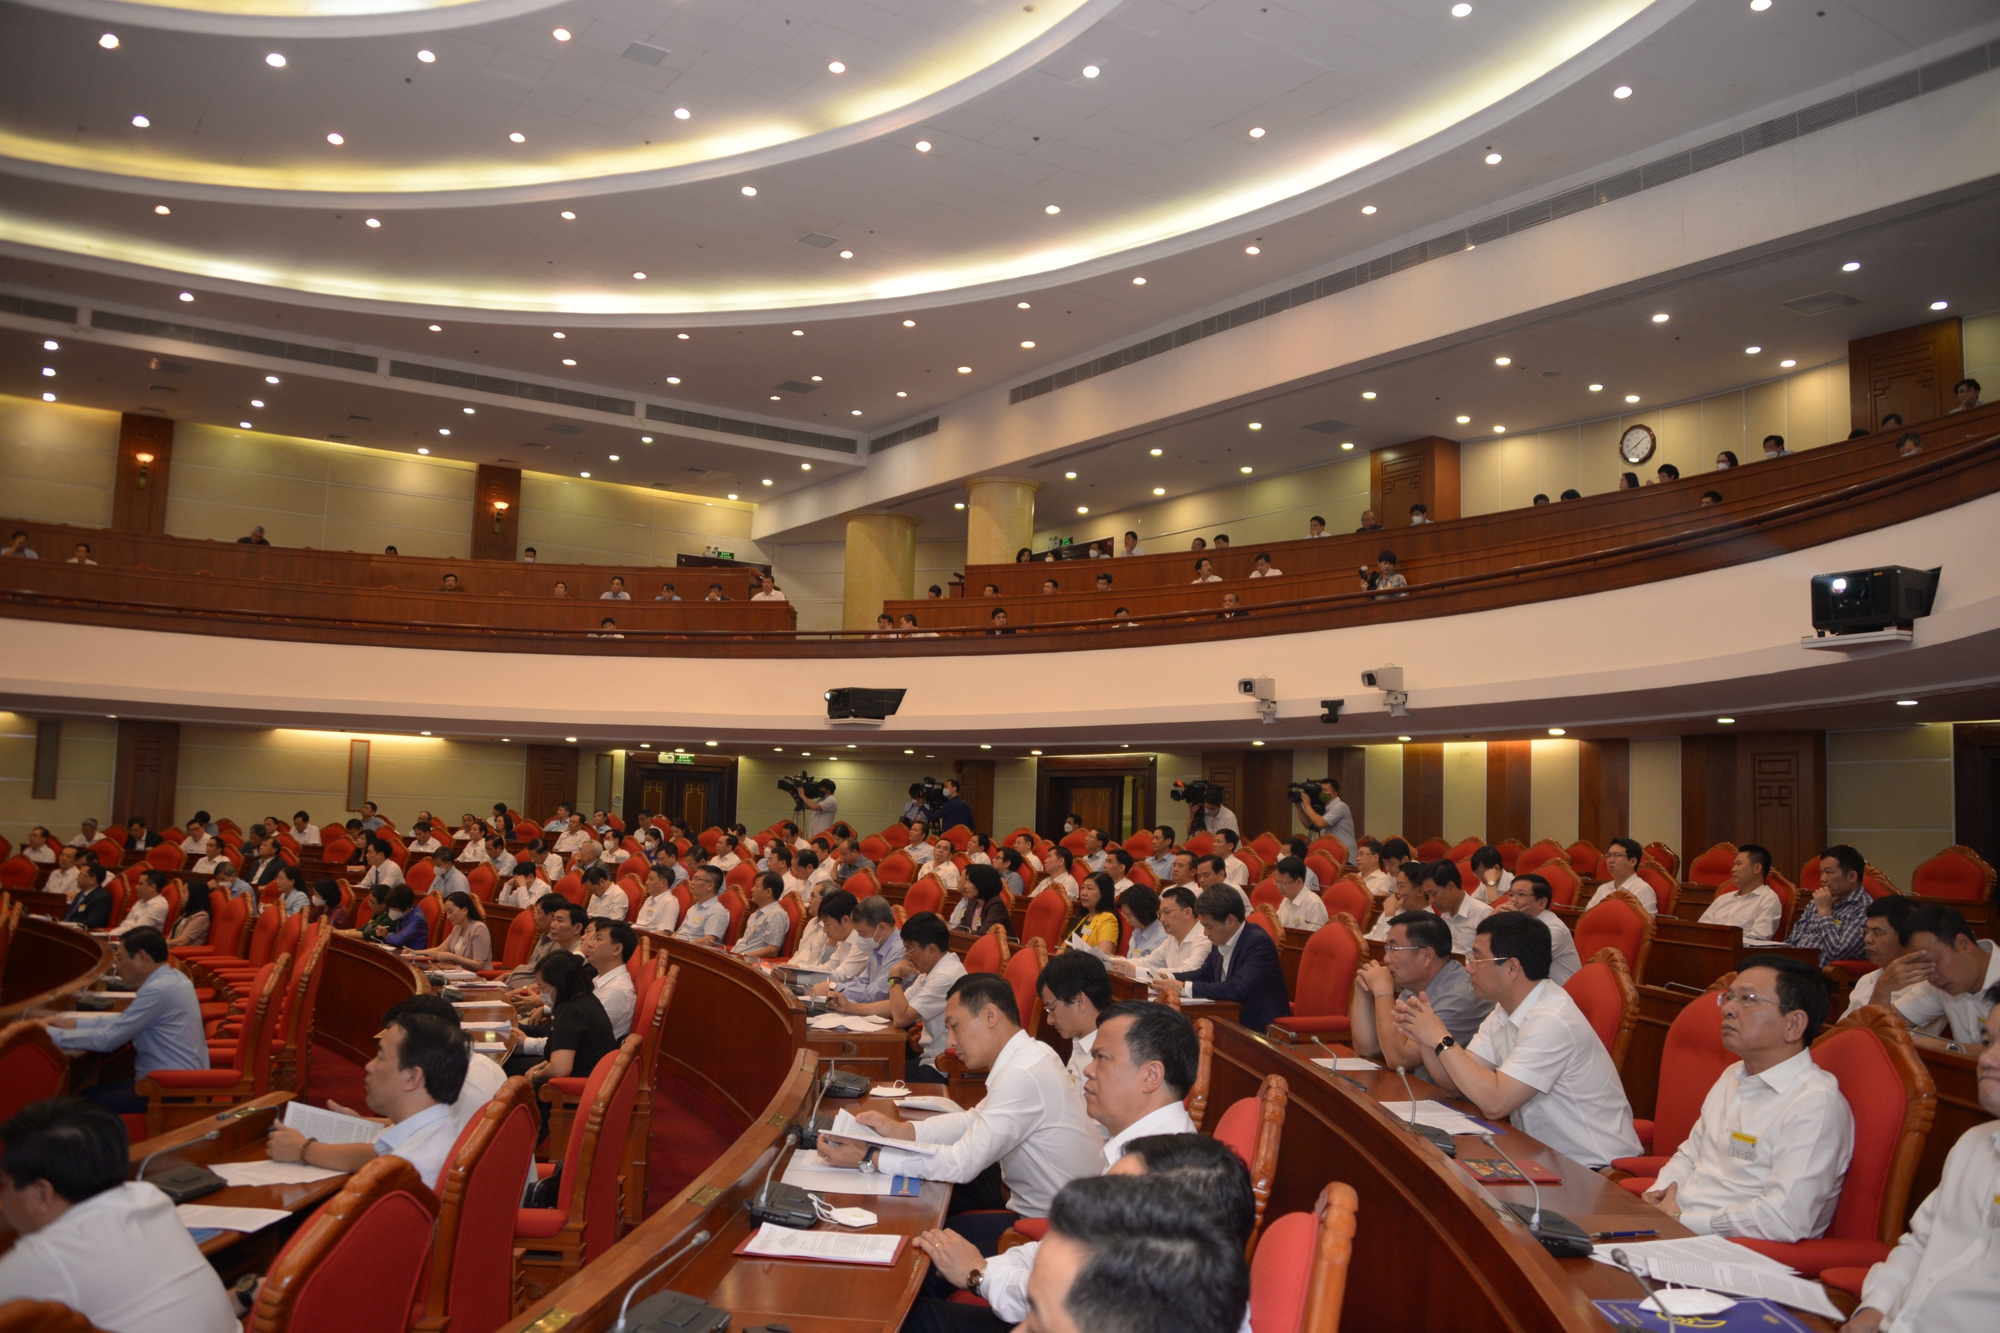 Hội nghị quán triệt, triển khai Nghị quyết về quy hoạch, phát triển đô thị của Bộ Chính trị - Ảnh 2.